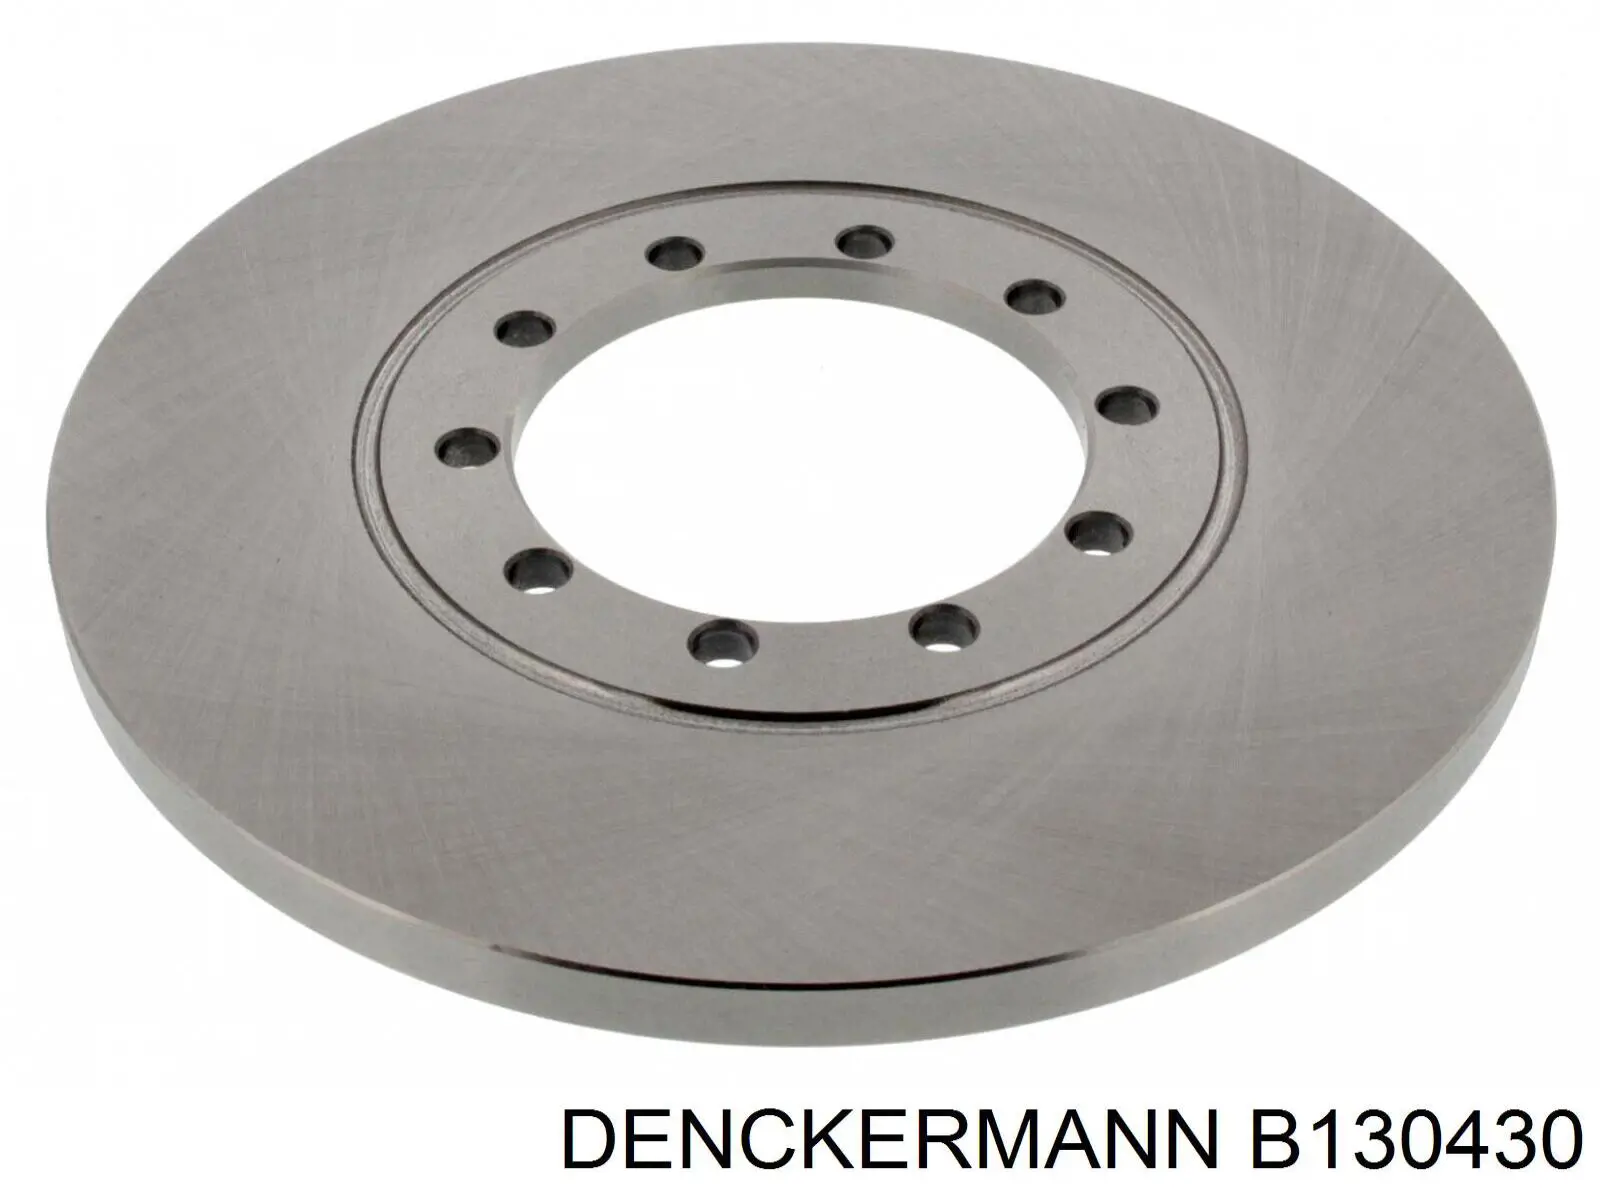 B130430 Denckermann disco do freio traseiro